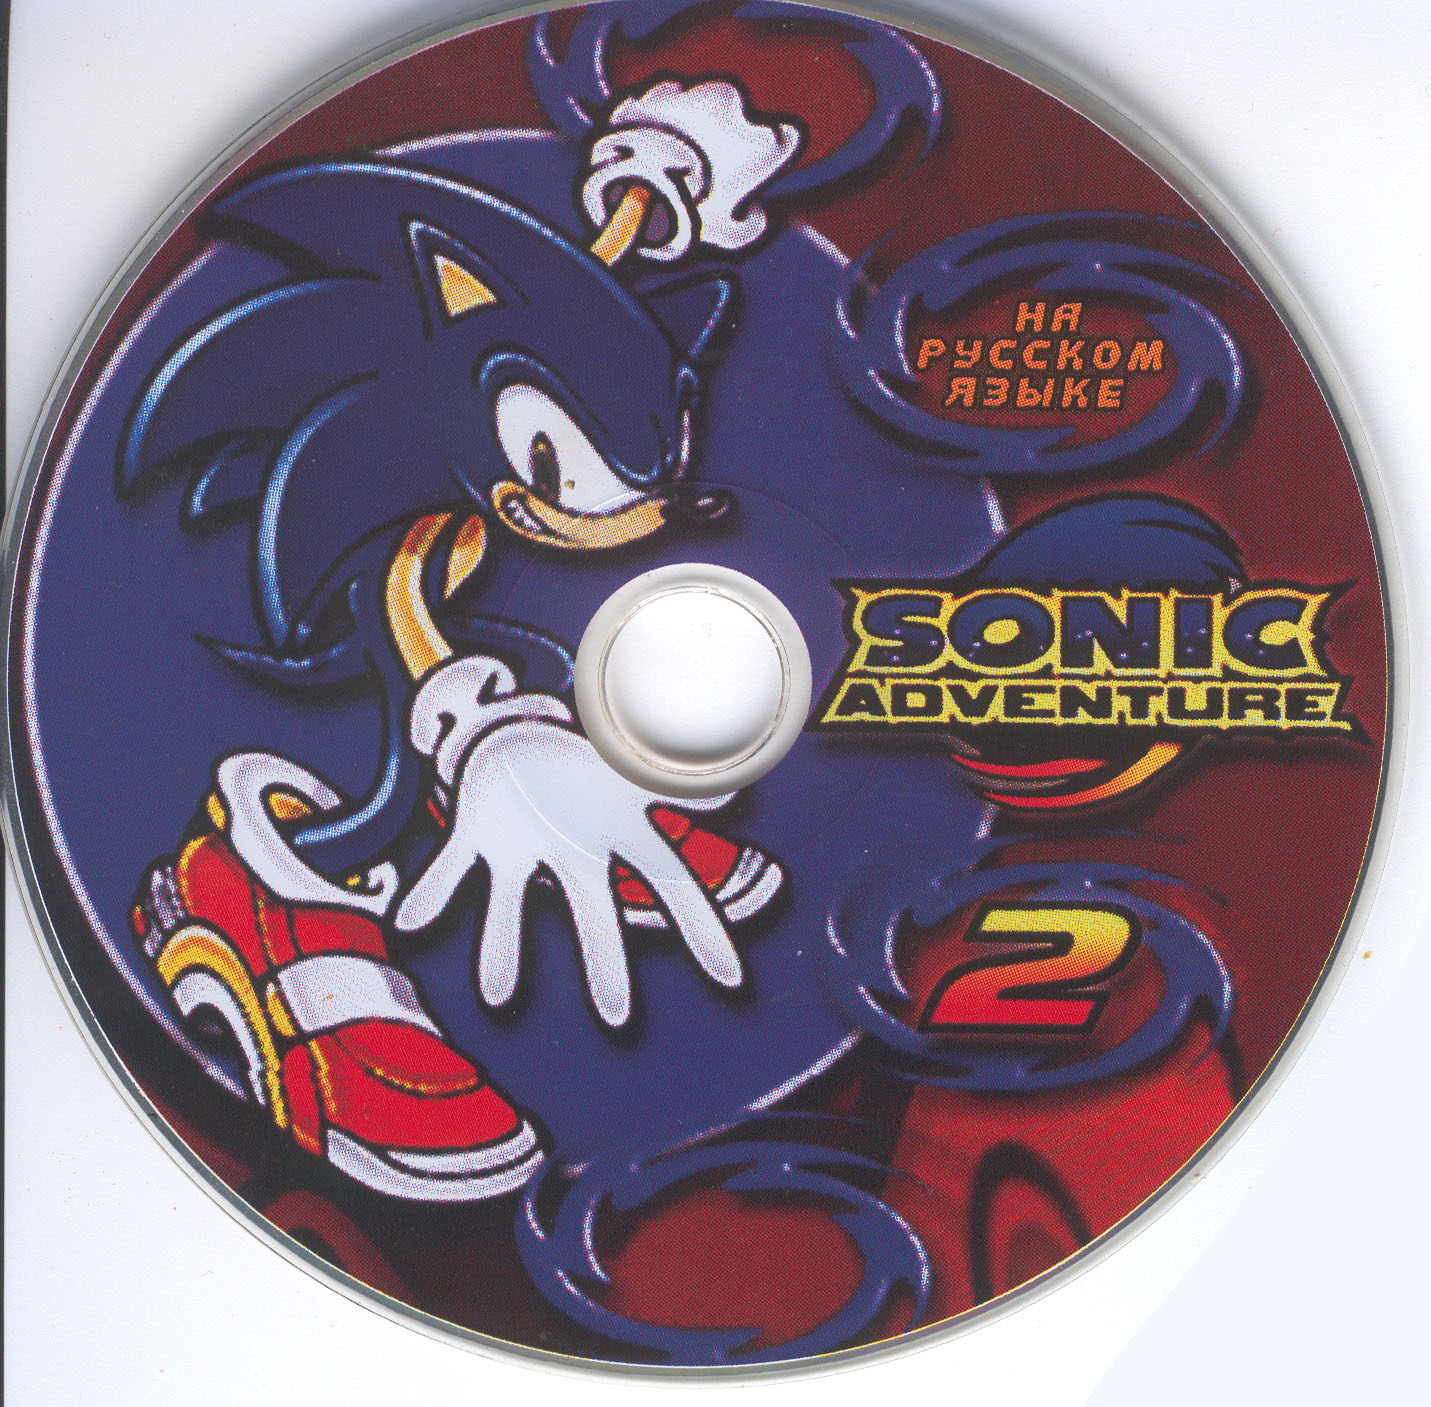 Sonic adventure dreamcast на русском. Dreamcast диск Sonic. Sonic Adventure 2 диск. Sega Dreamcast Sonic Adventure 2. Sonic Adventure Dreamcast диск.